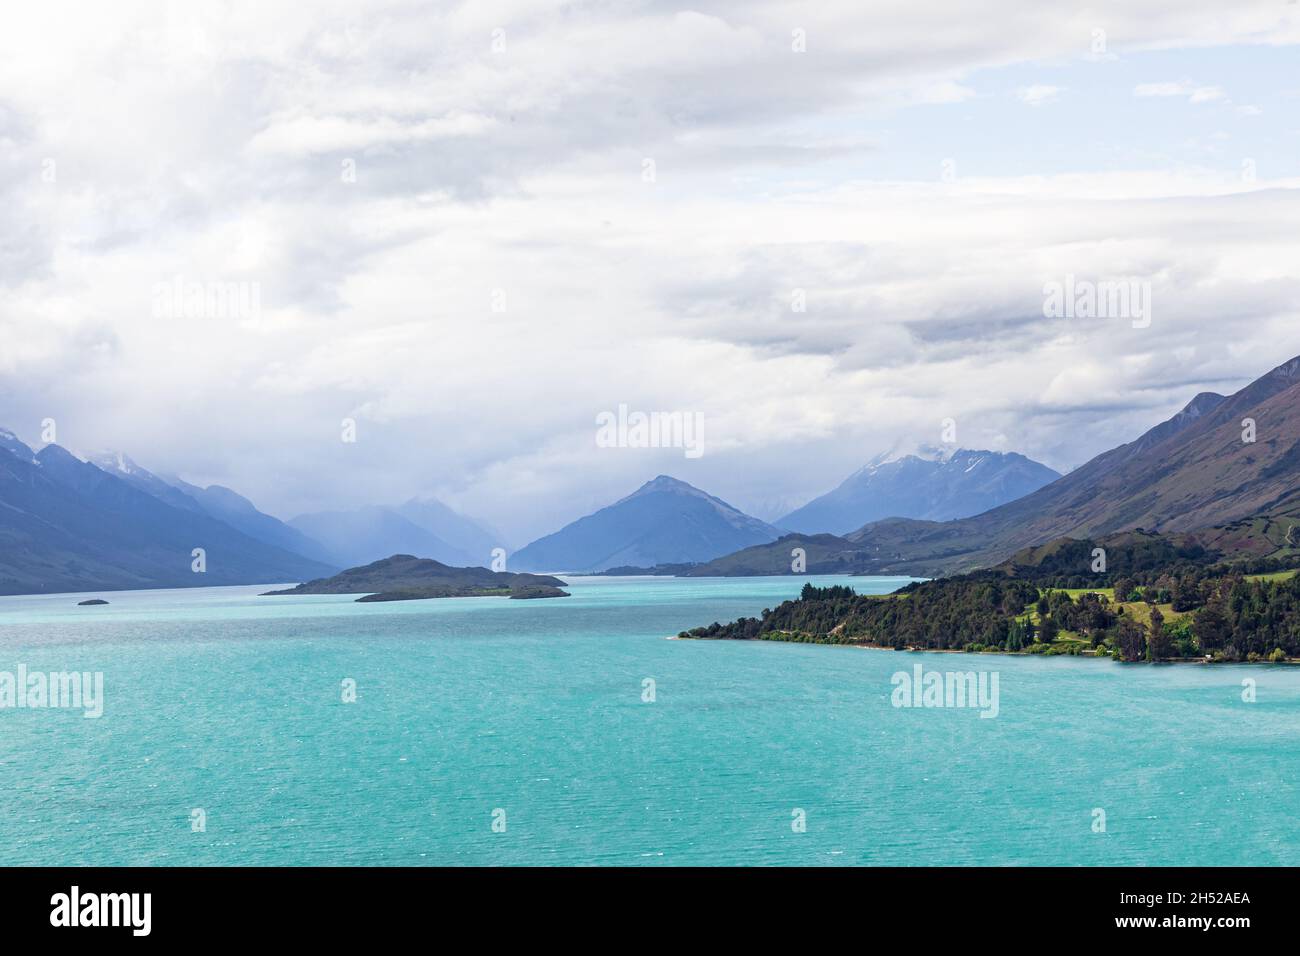 Panorama of Lake Wakatipu. New Zealand Stock Photo